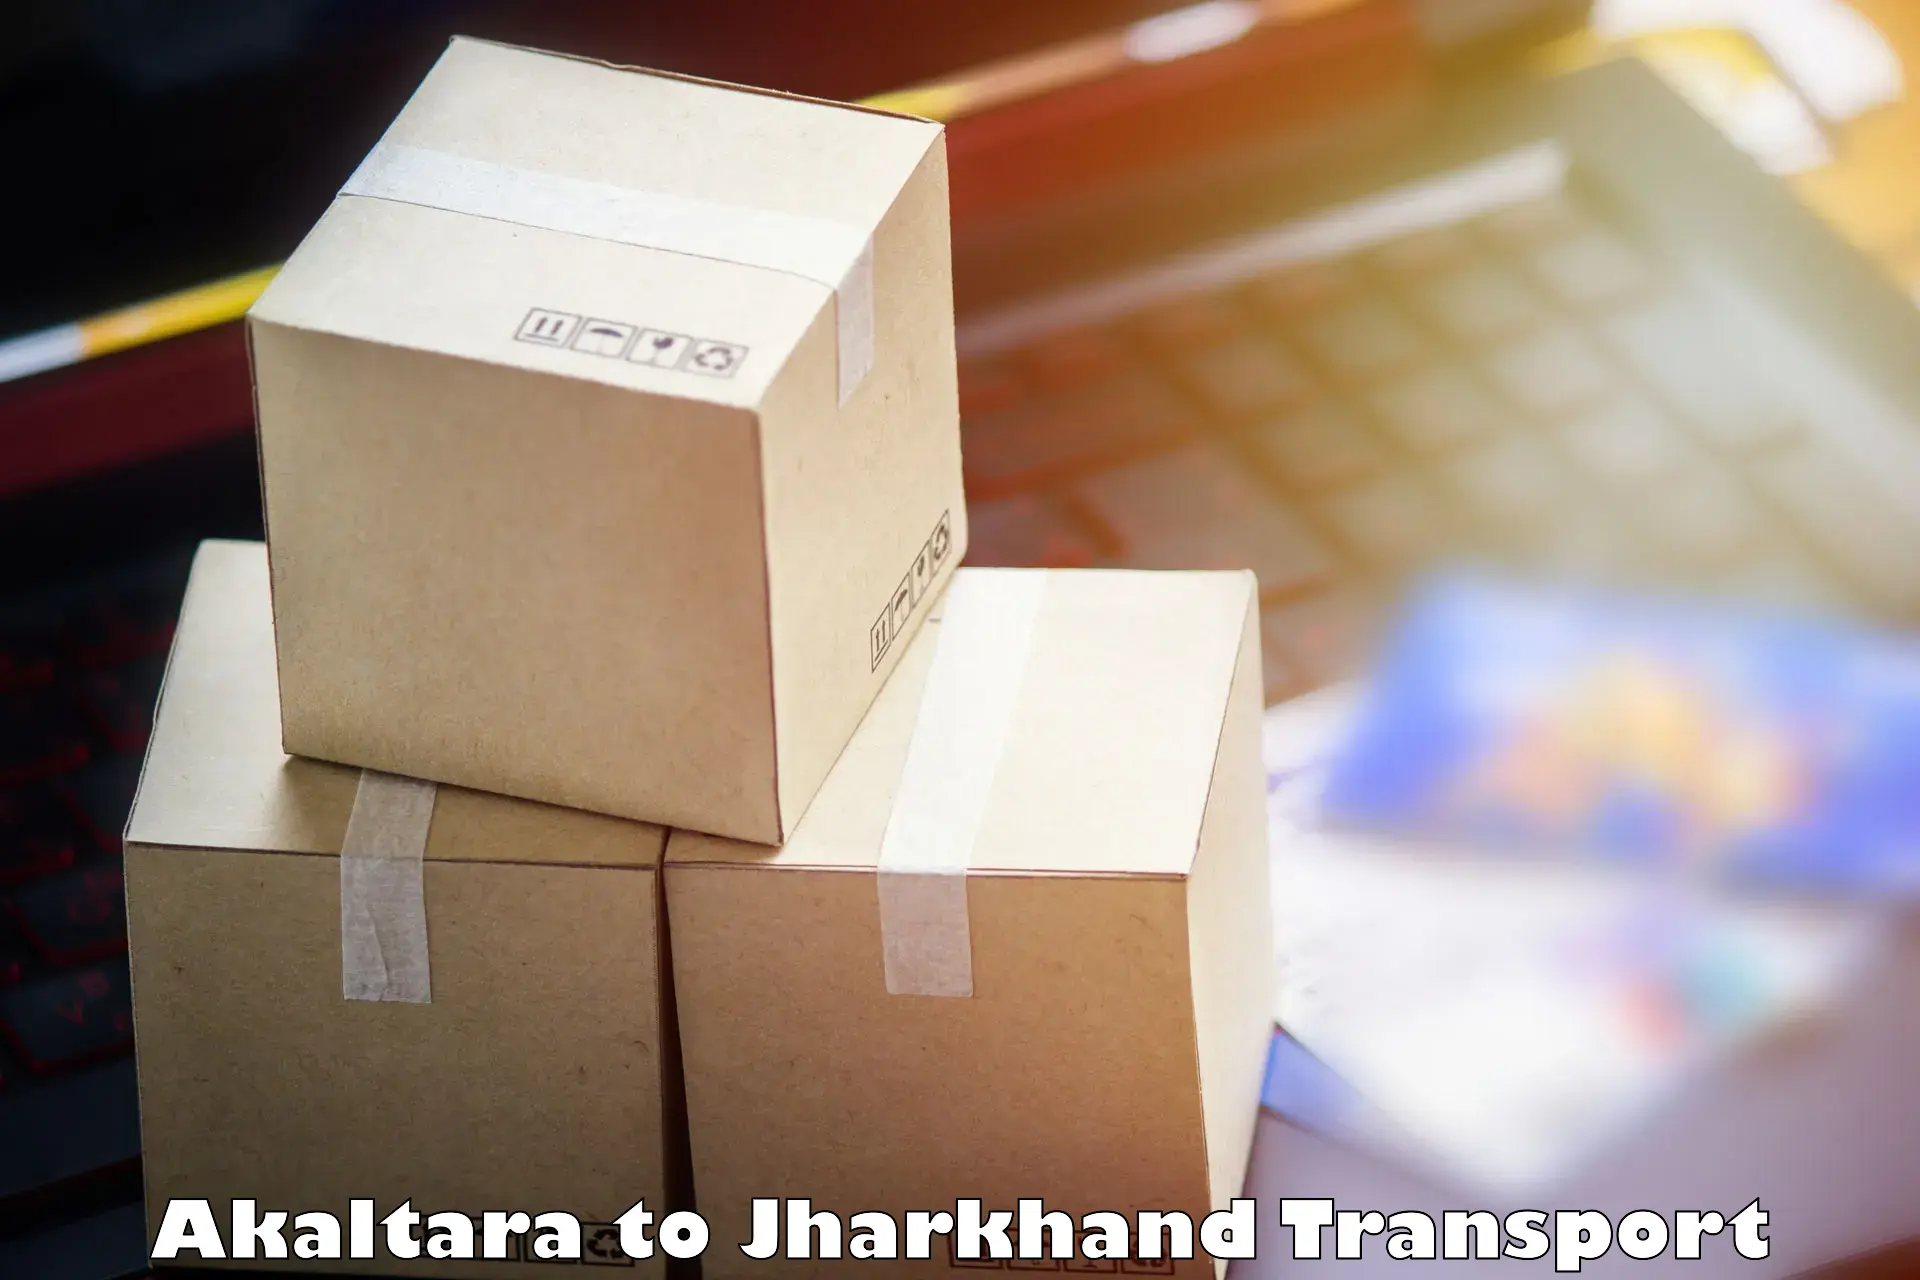 Daily transport service Akaltara to Shikaripara